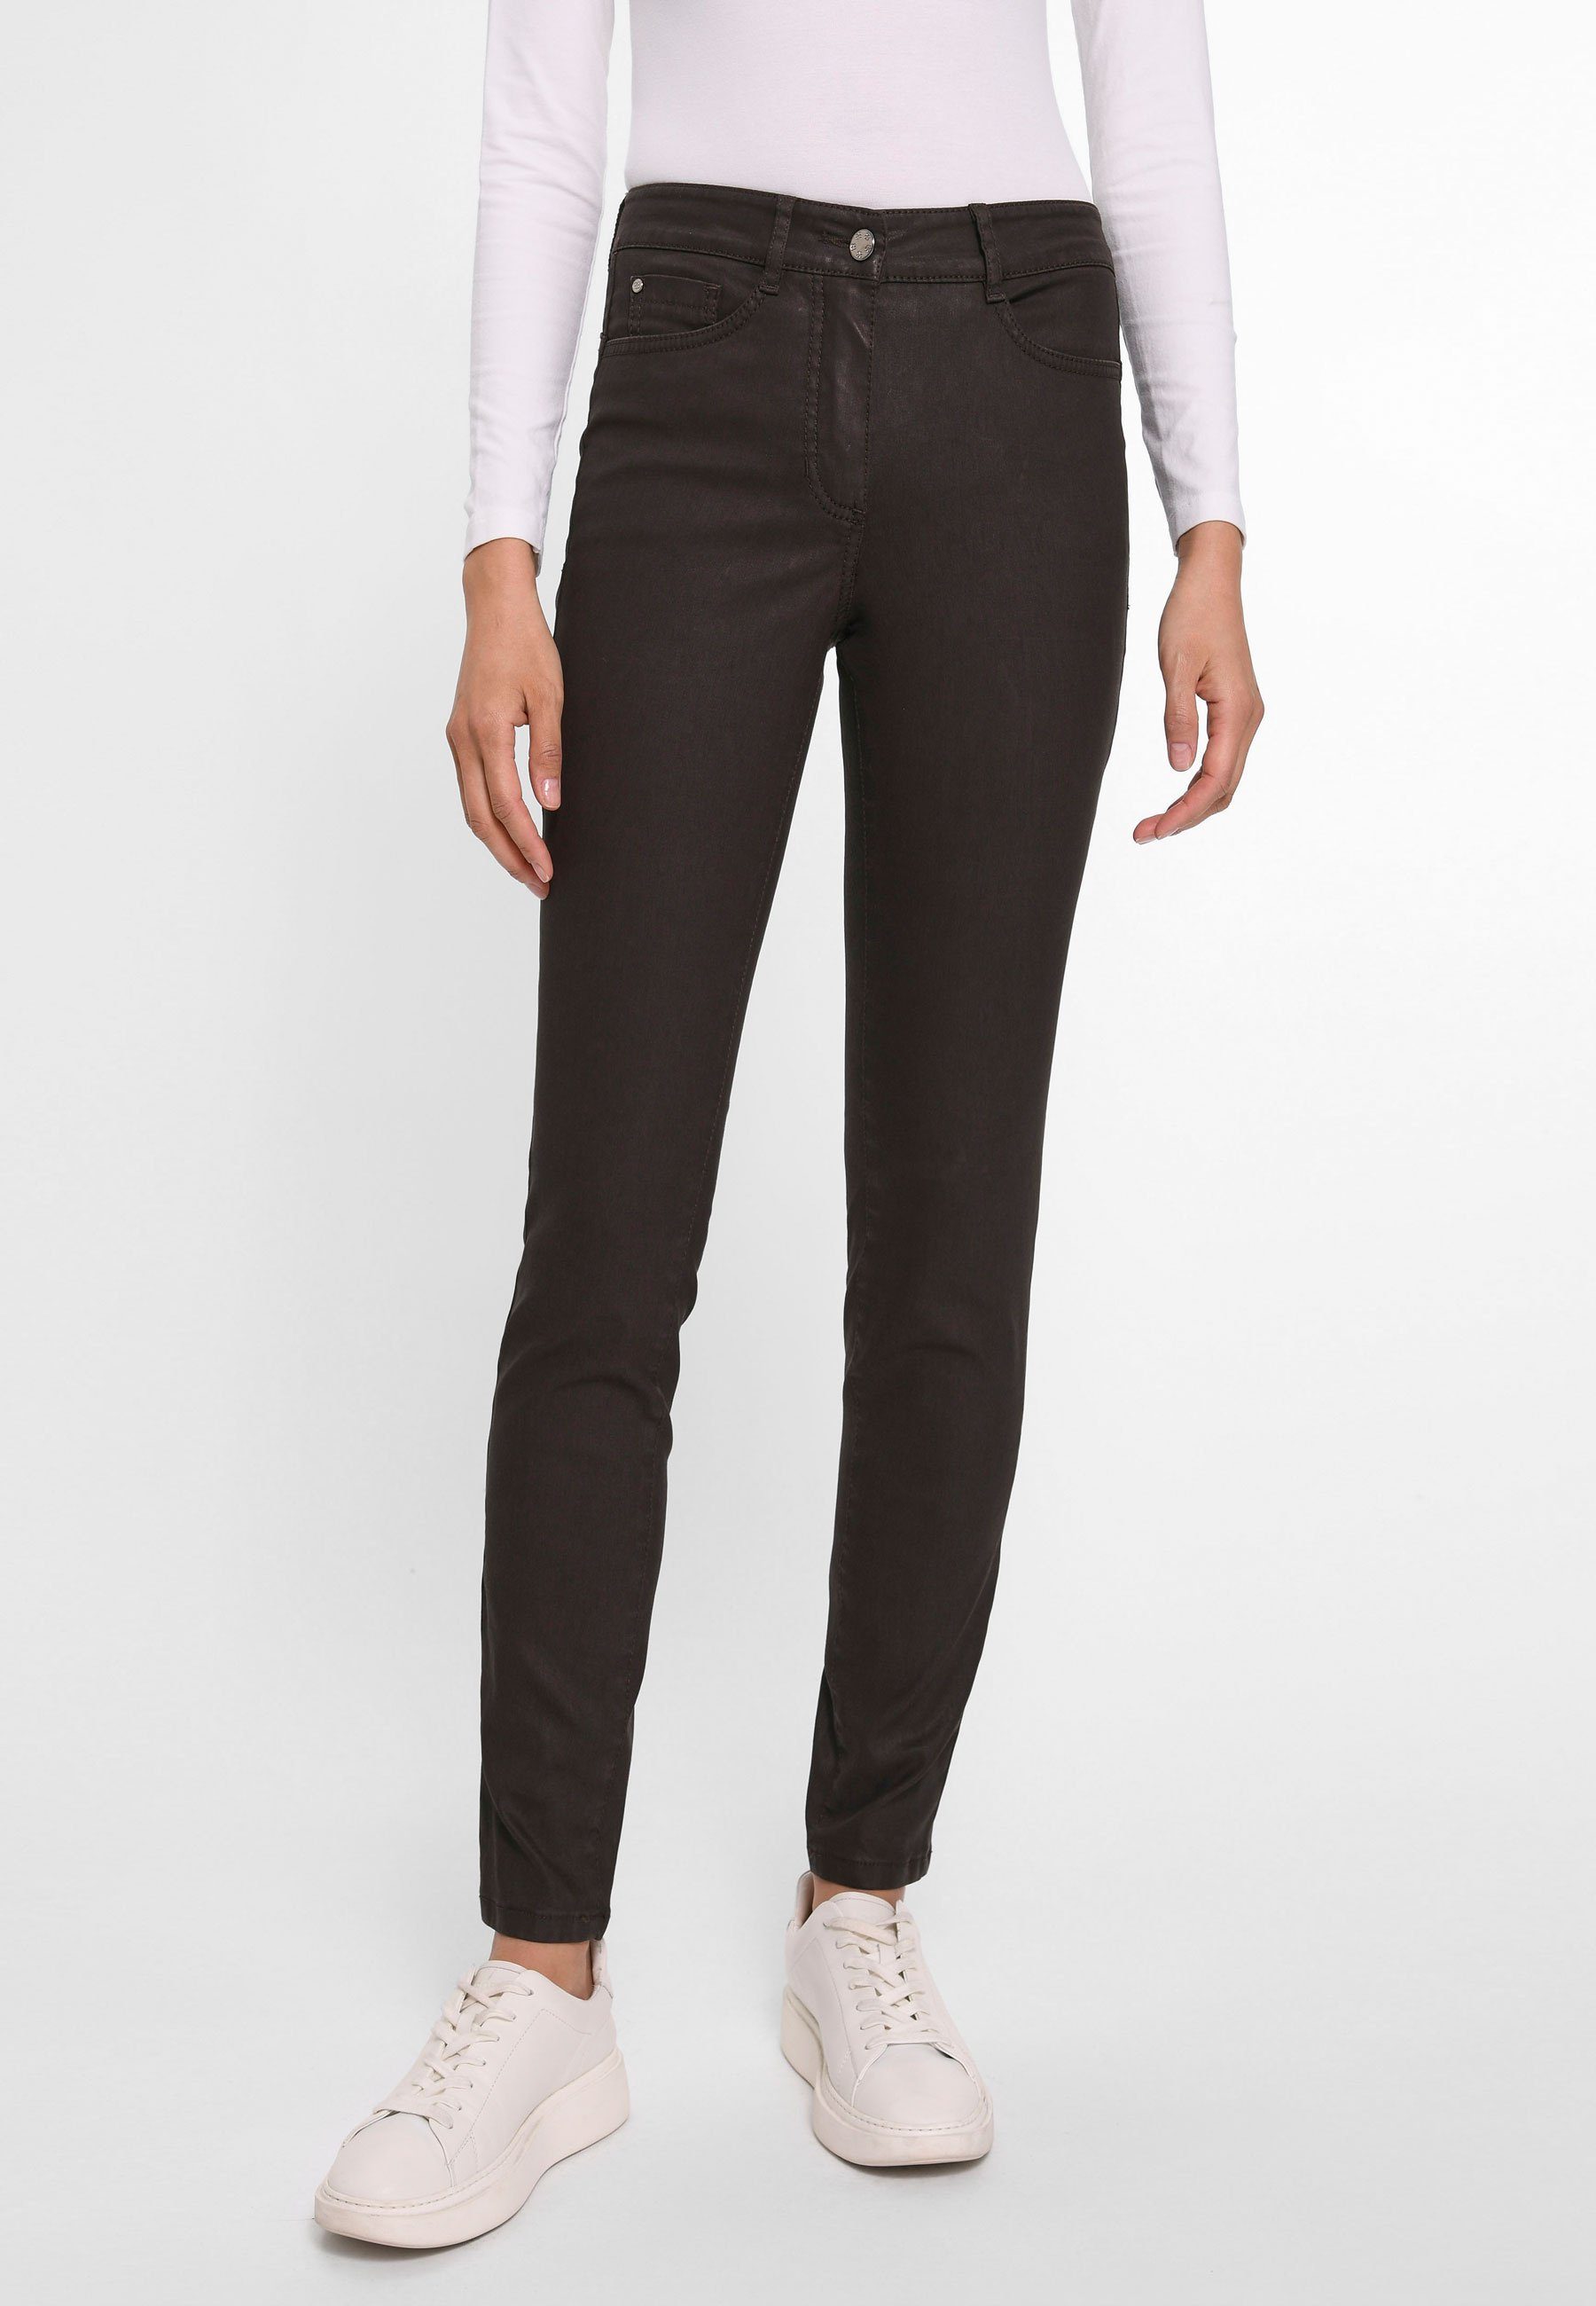 Basler 5-Pocket-Jeans Cotton mit Taschen dunkelbraun